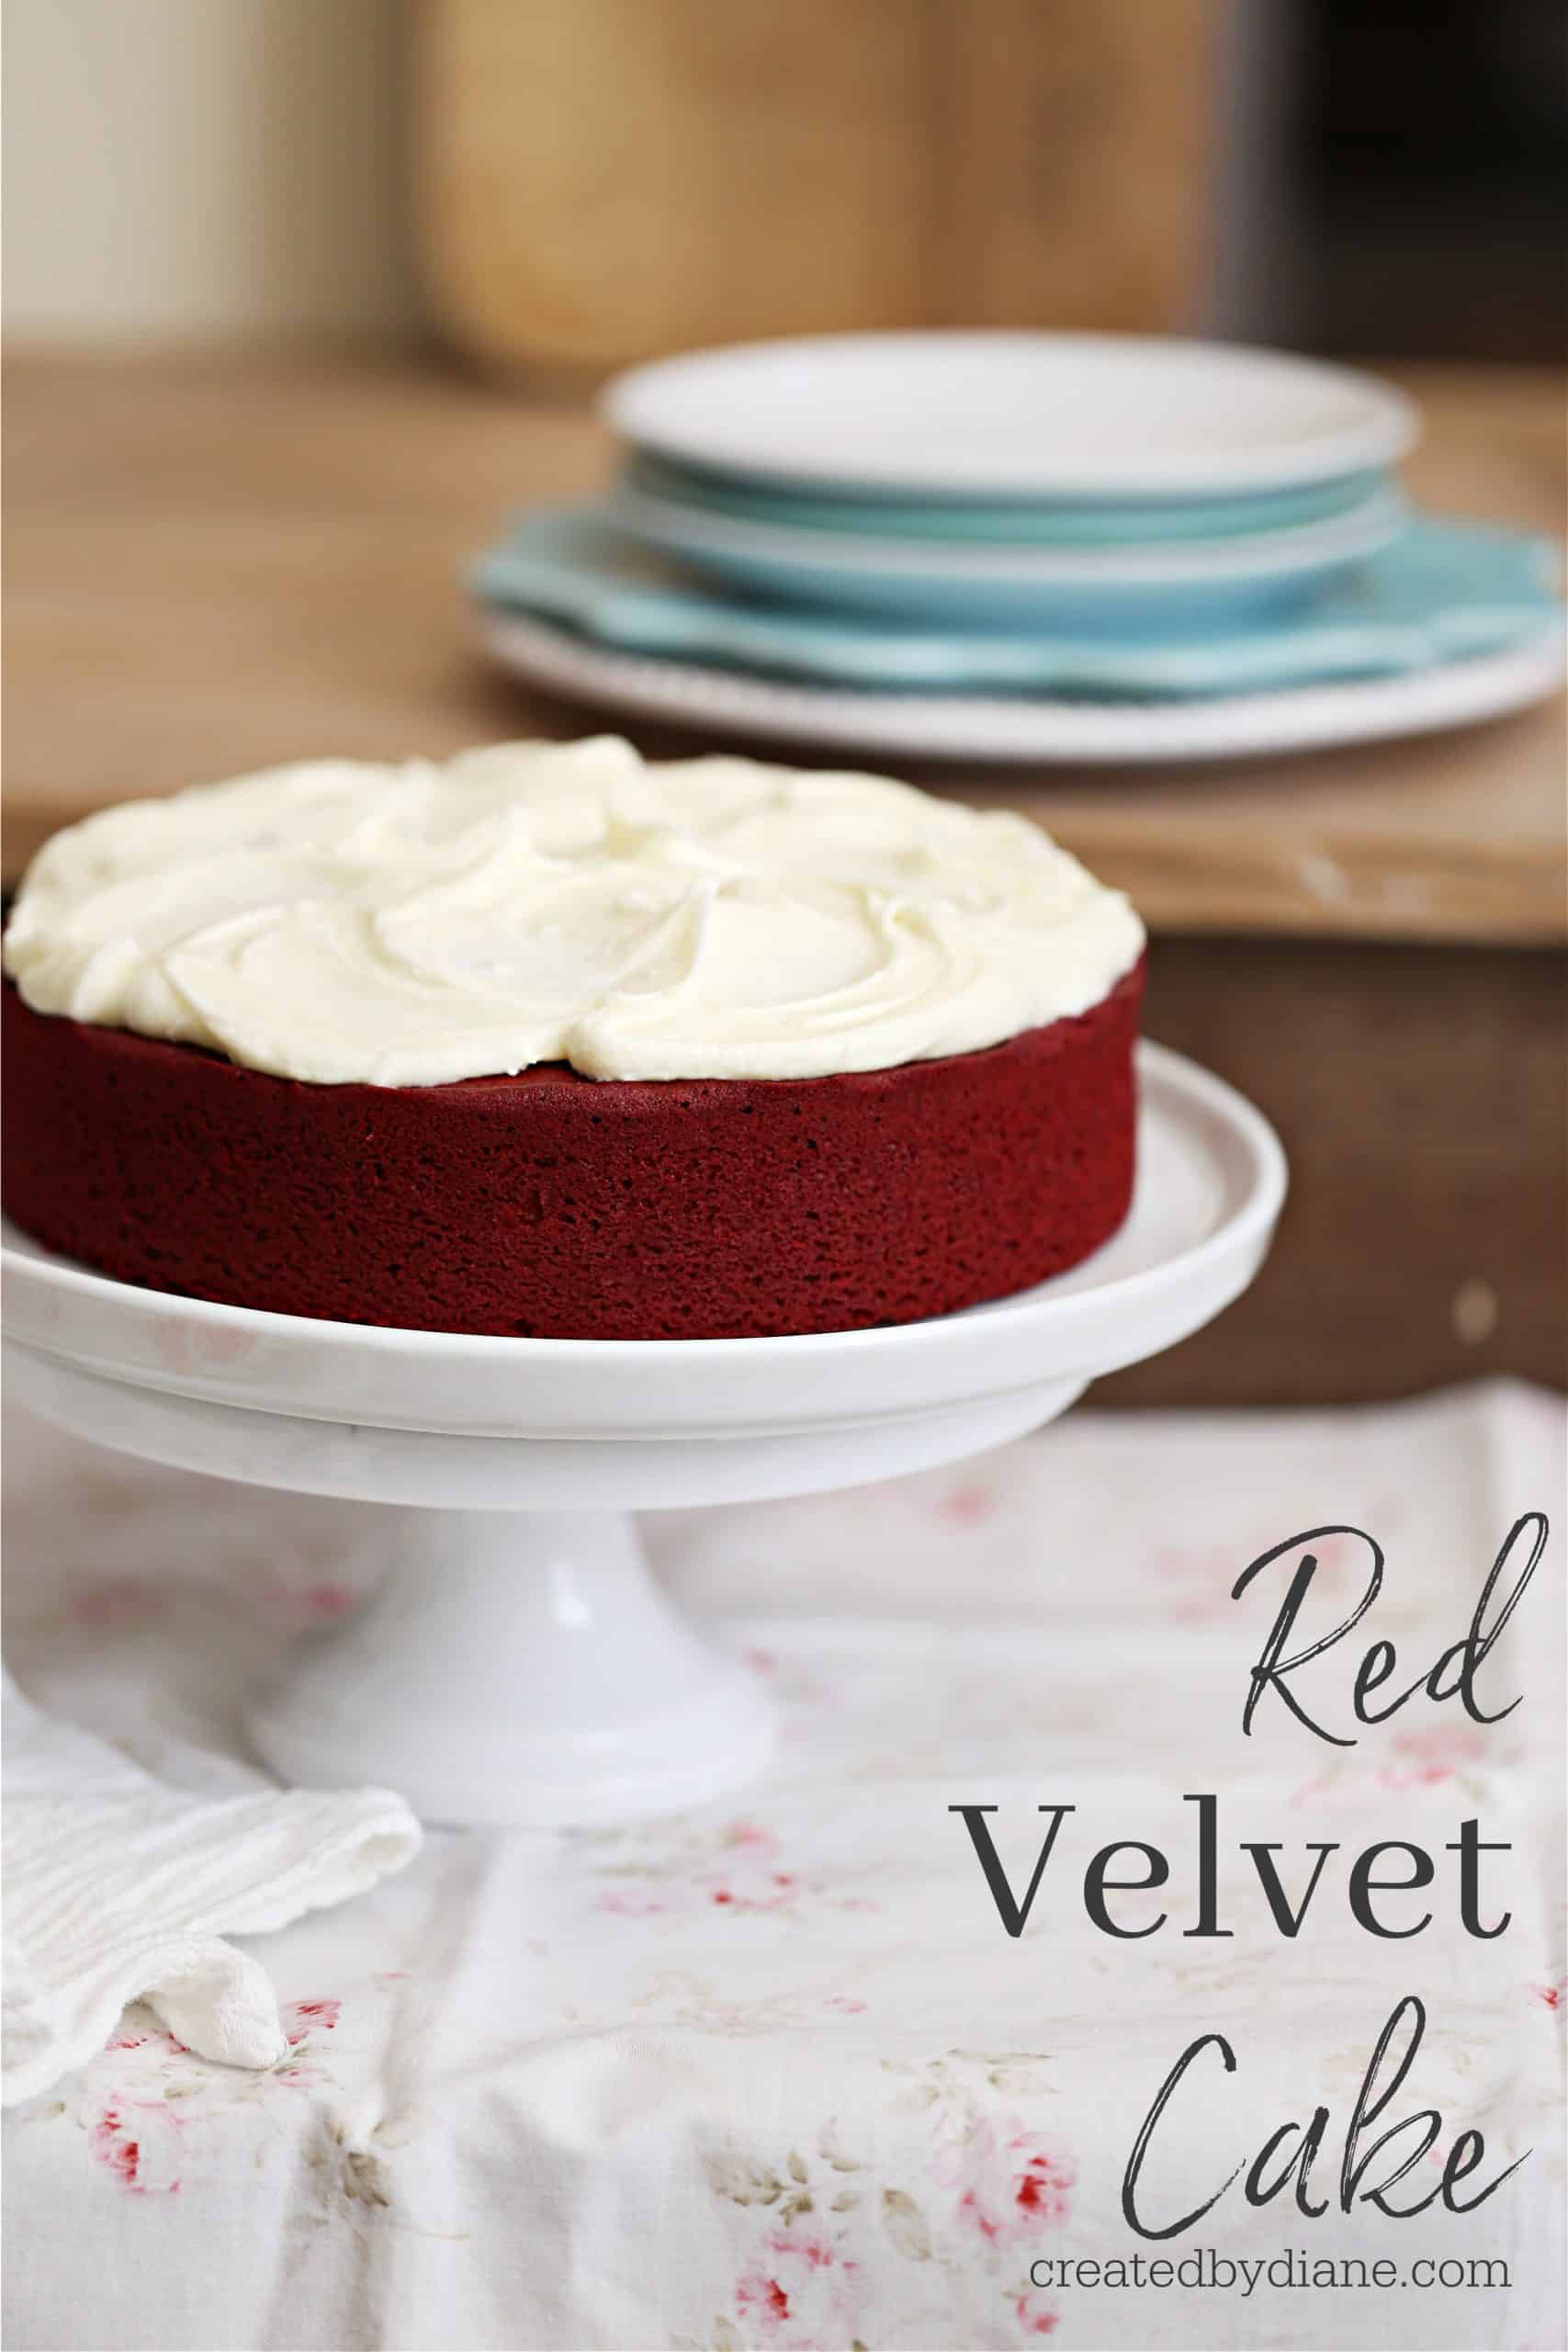 Red Velvet Cake Recipe | How to Make Red Velvet Cake - YouTube